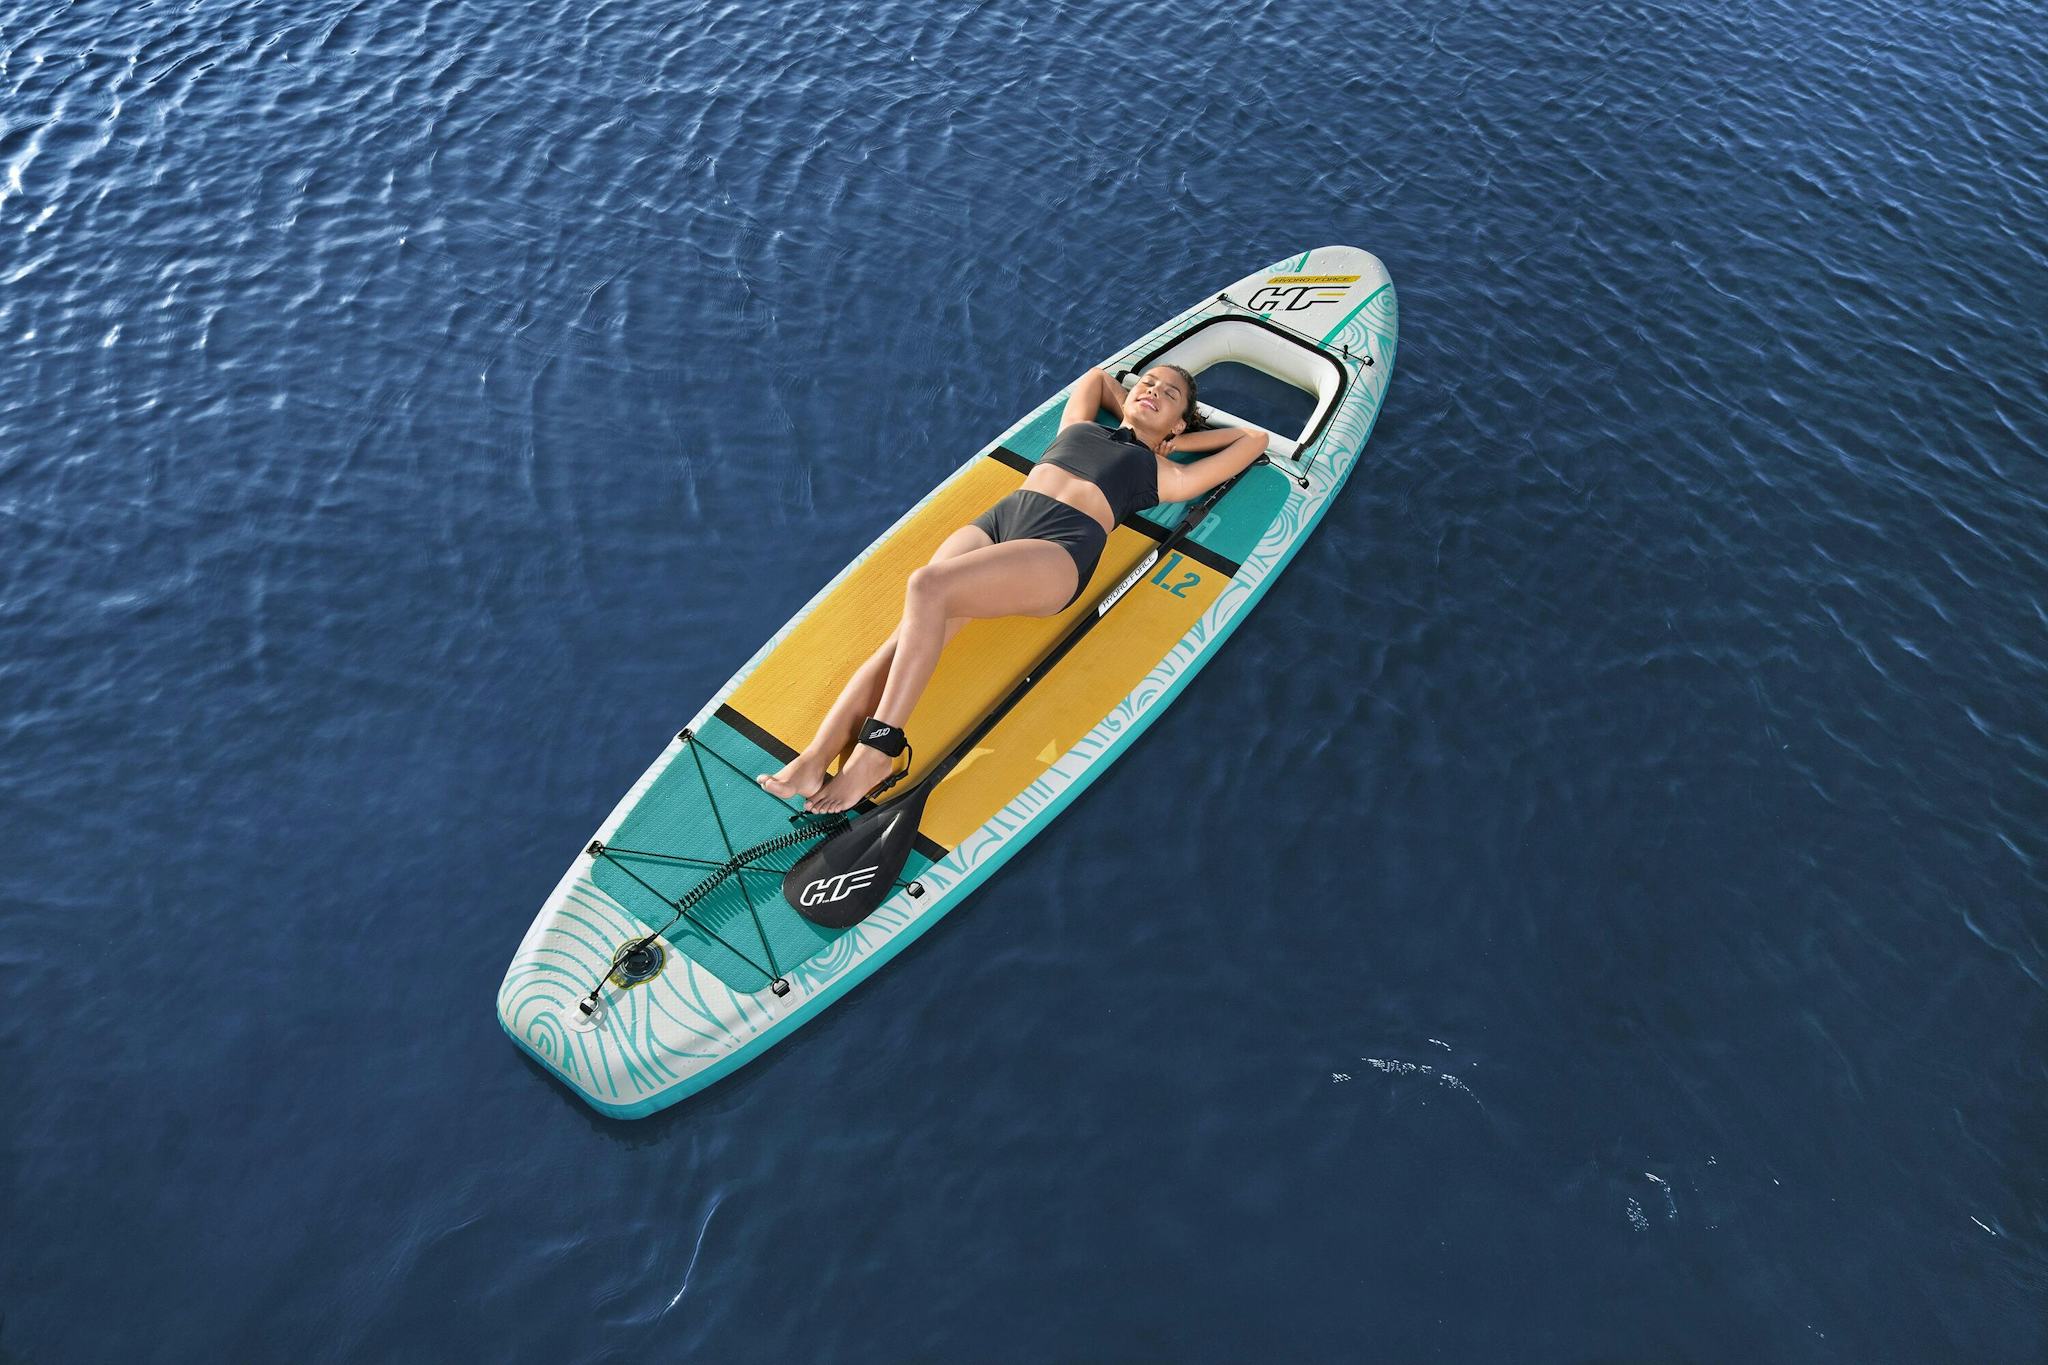 Sports d'eau Paddle gonflable Panorama Hydro-force™, 340 x 89 x 15 cm, 150 kg max, fenêtre transparente, poignées de transport, pompe, leash, sac de transport et pagaie Bestway 8